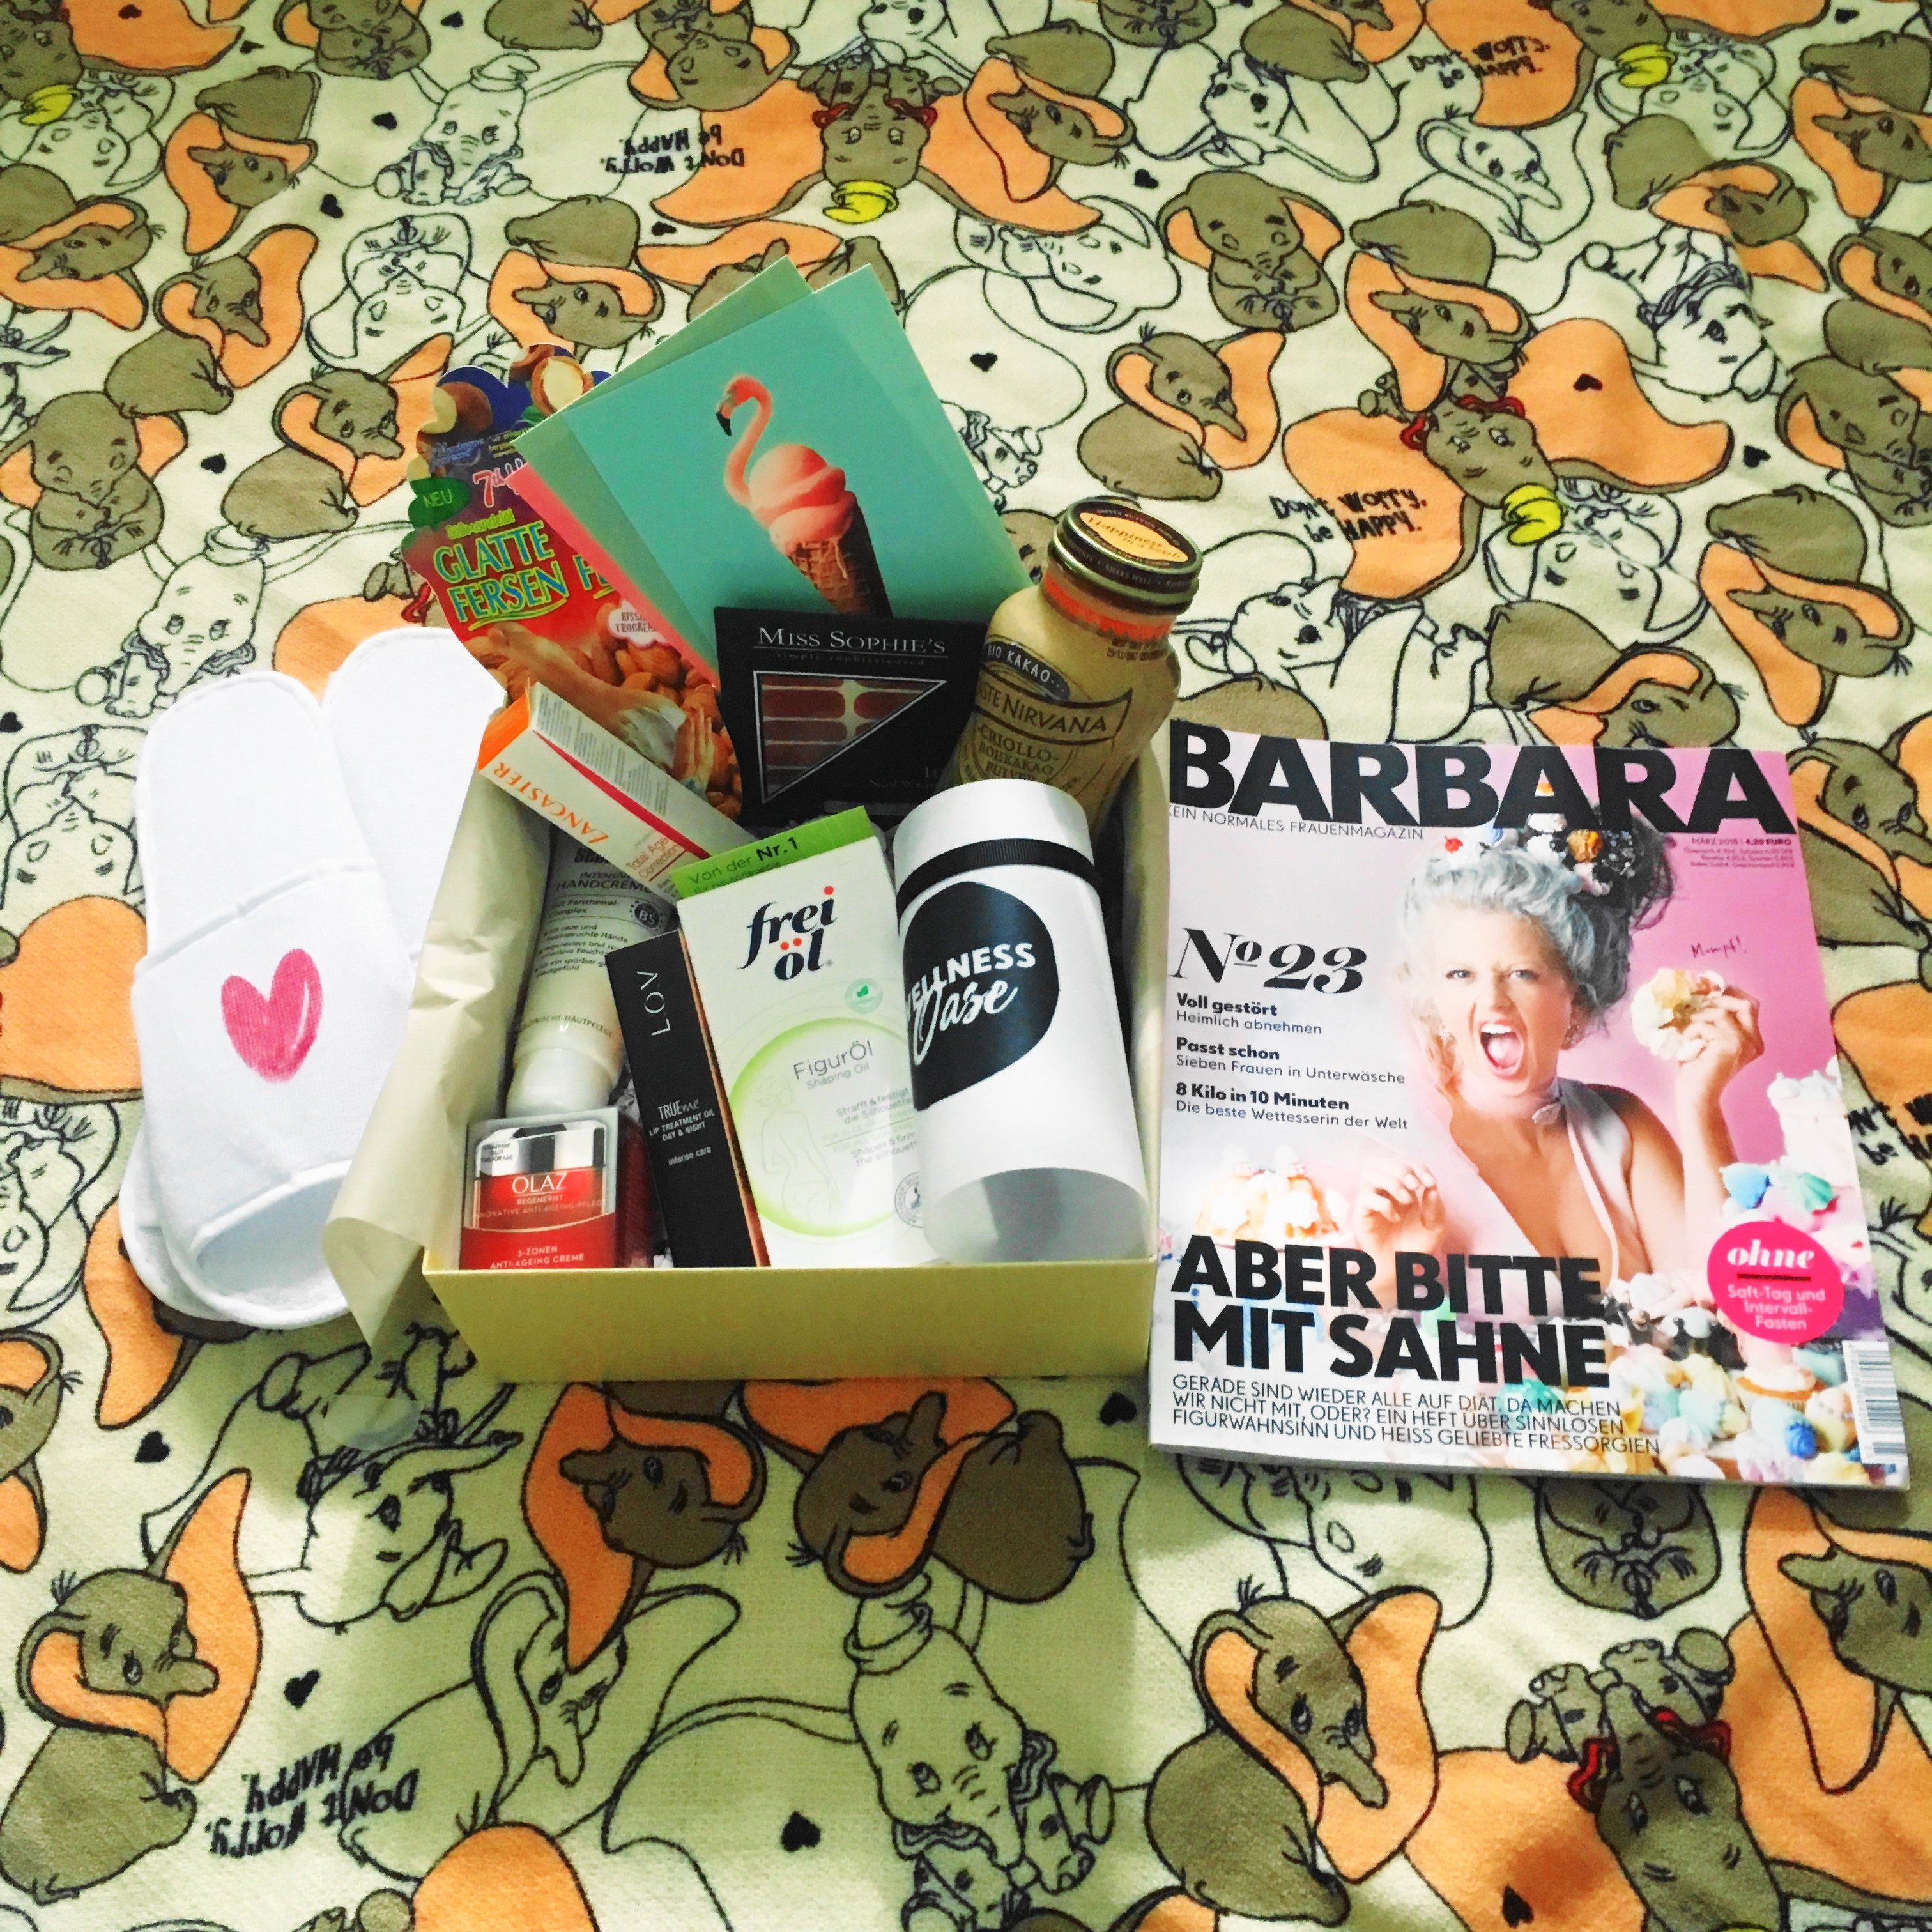 Heute stelle ich euch auf meinem Blog die aktuelle Barbara Box Wellness-Wochenede Edition näher vor und zeige euch alle enthaltenen top Produkte im Detail